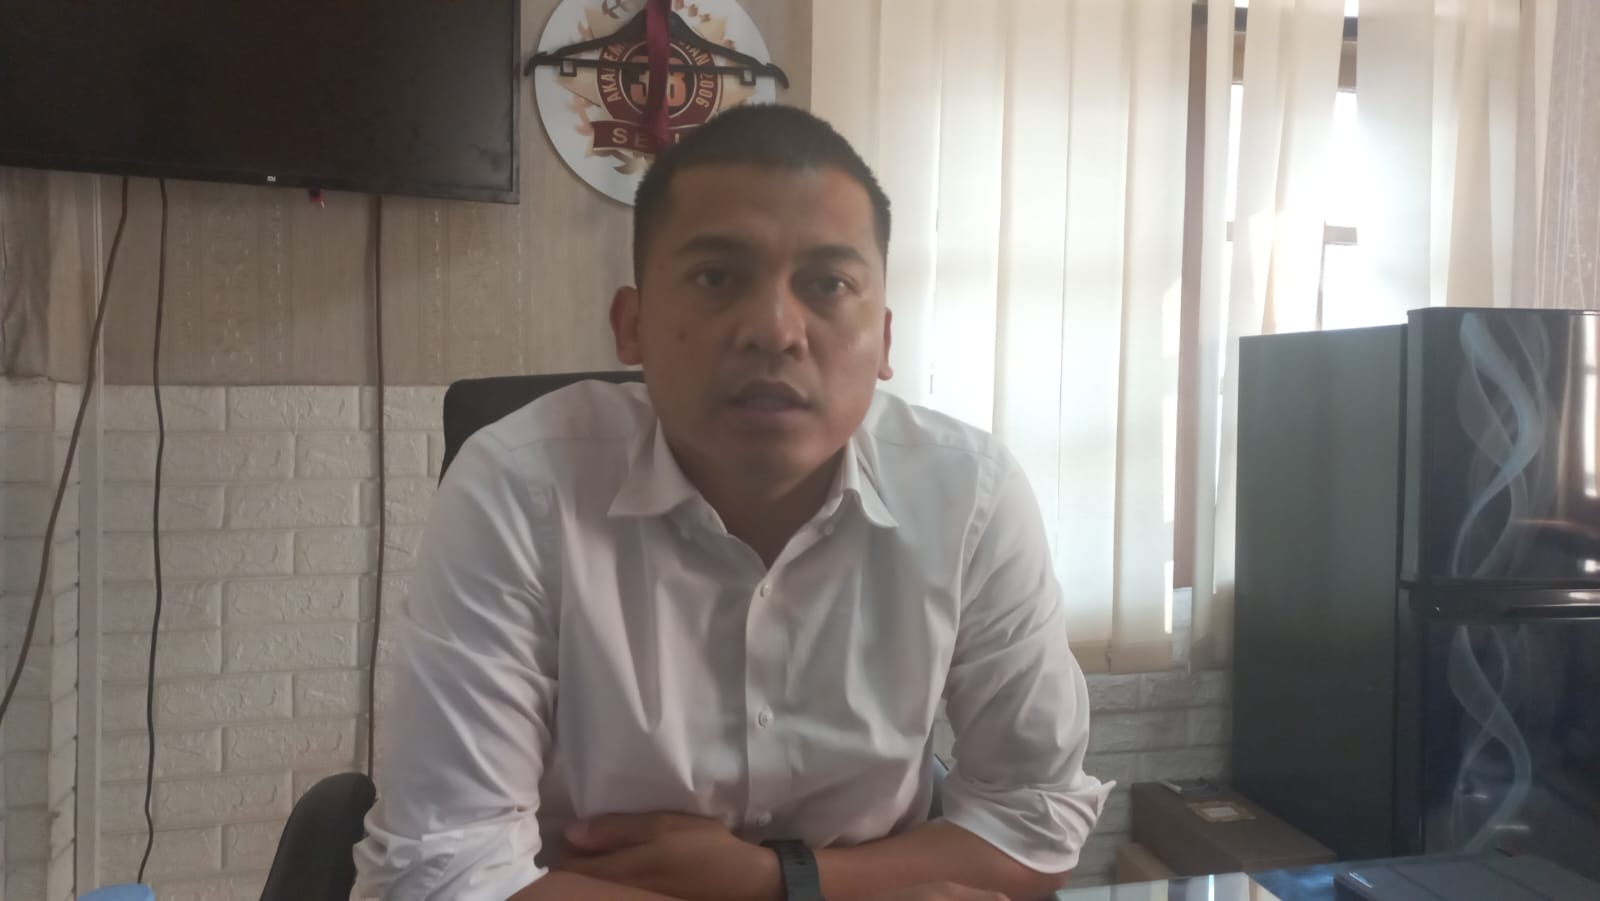 Laporan Siswi SMP SFA Terhadap Salah Satu Komedian, Polda Jambi Tempuh Jalur Restorative Justice